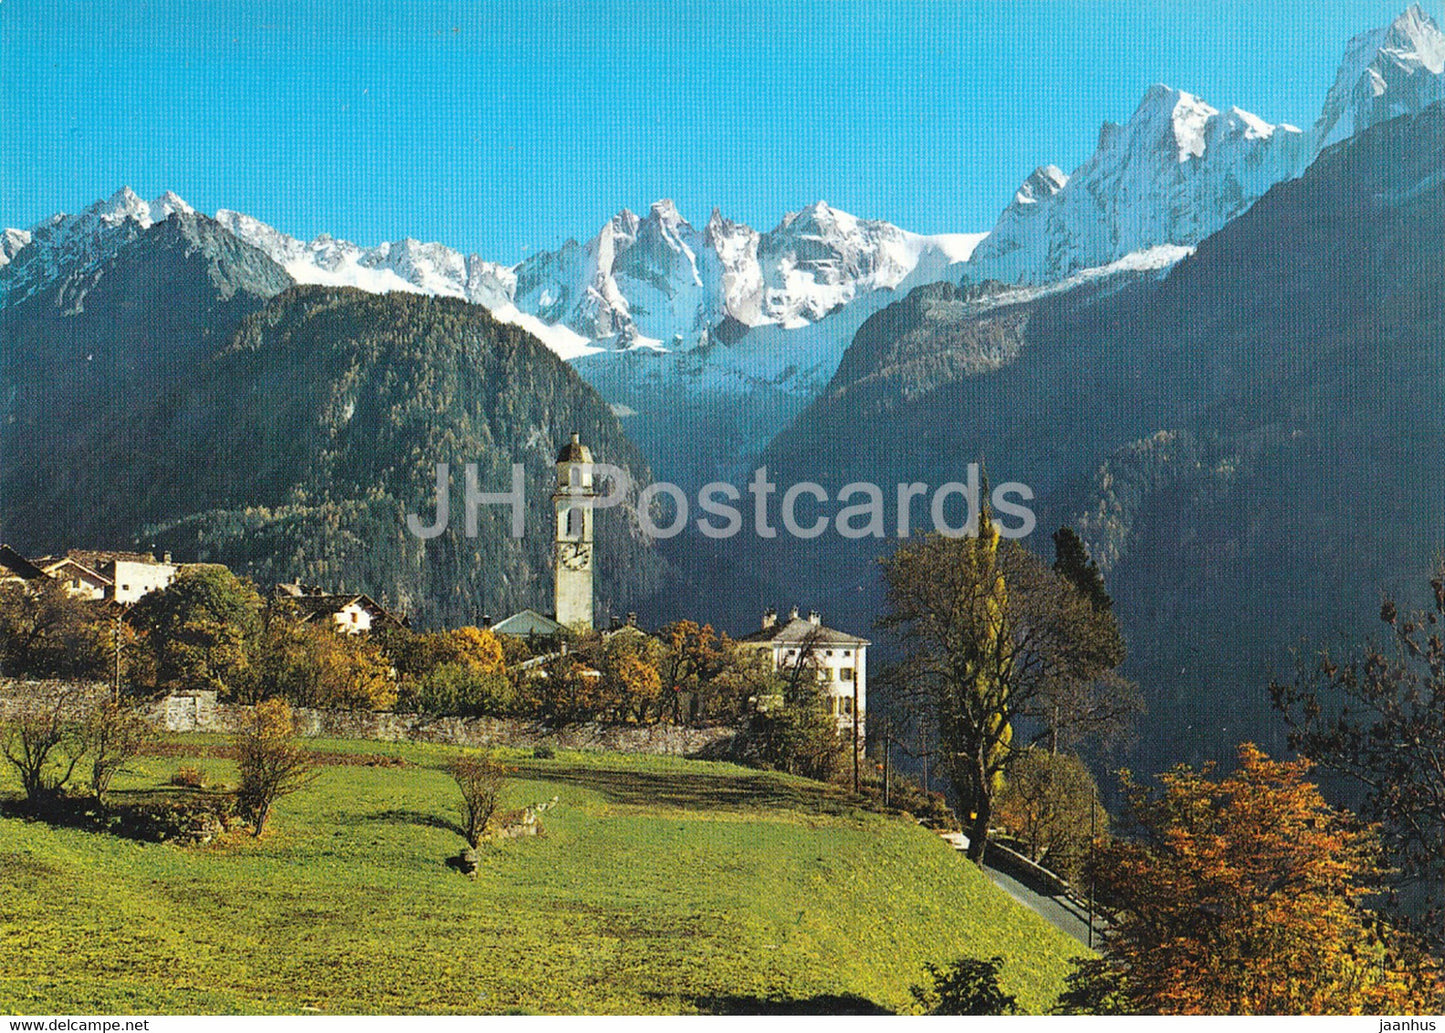 Soglio im Bergell mit Bondascatal und Sciora Gruppe - 491 - Switzerland - unused - JH Postcards